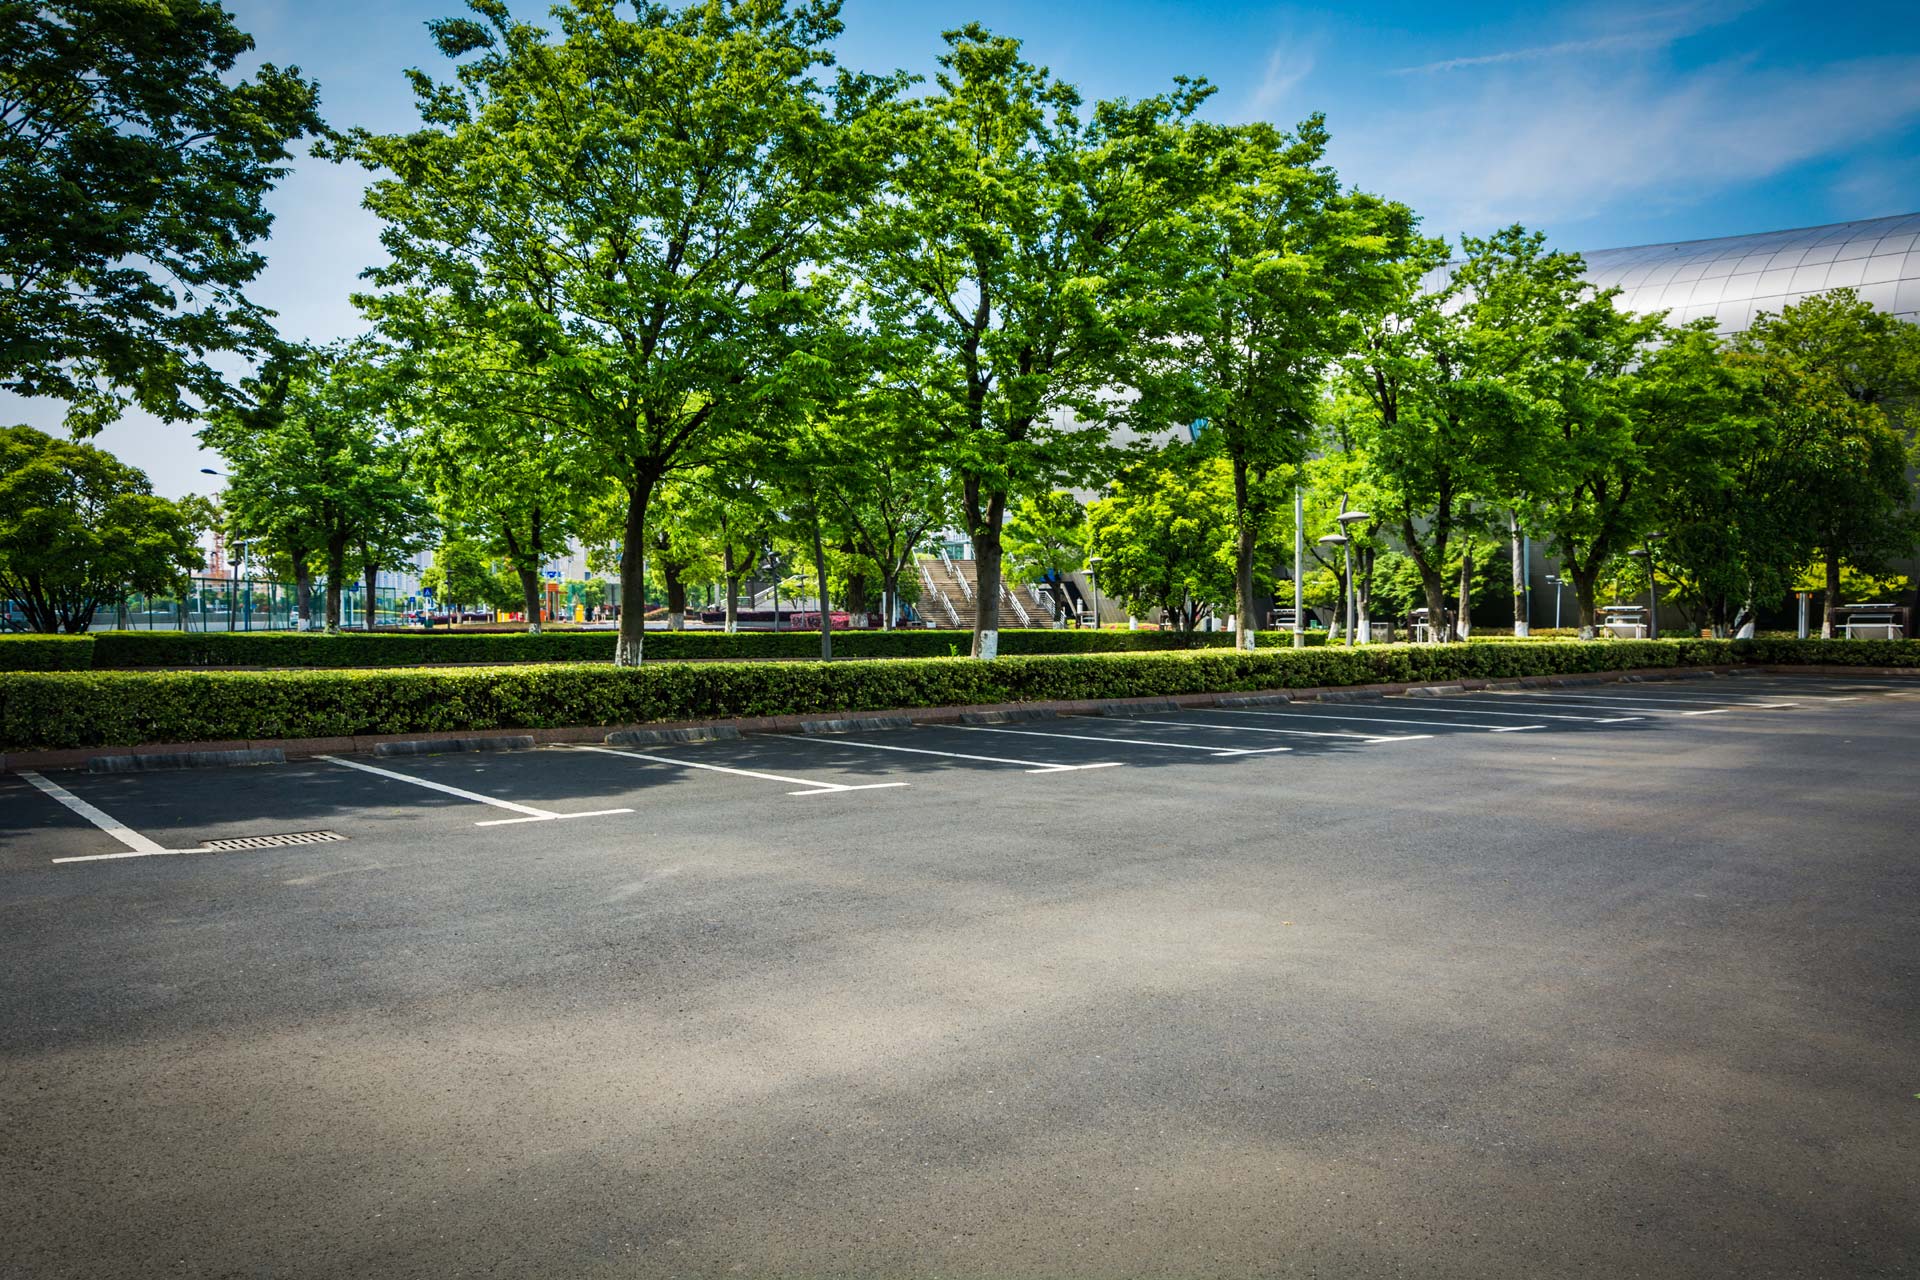 Asphalt car park with shade trees